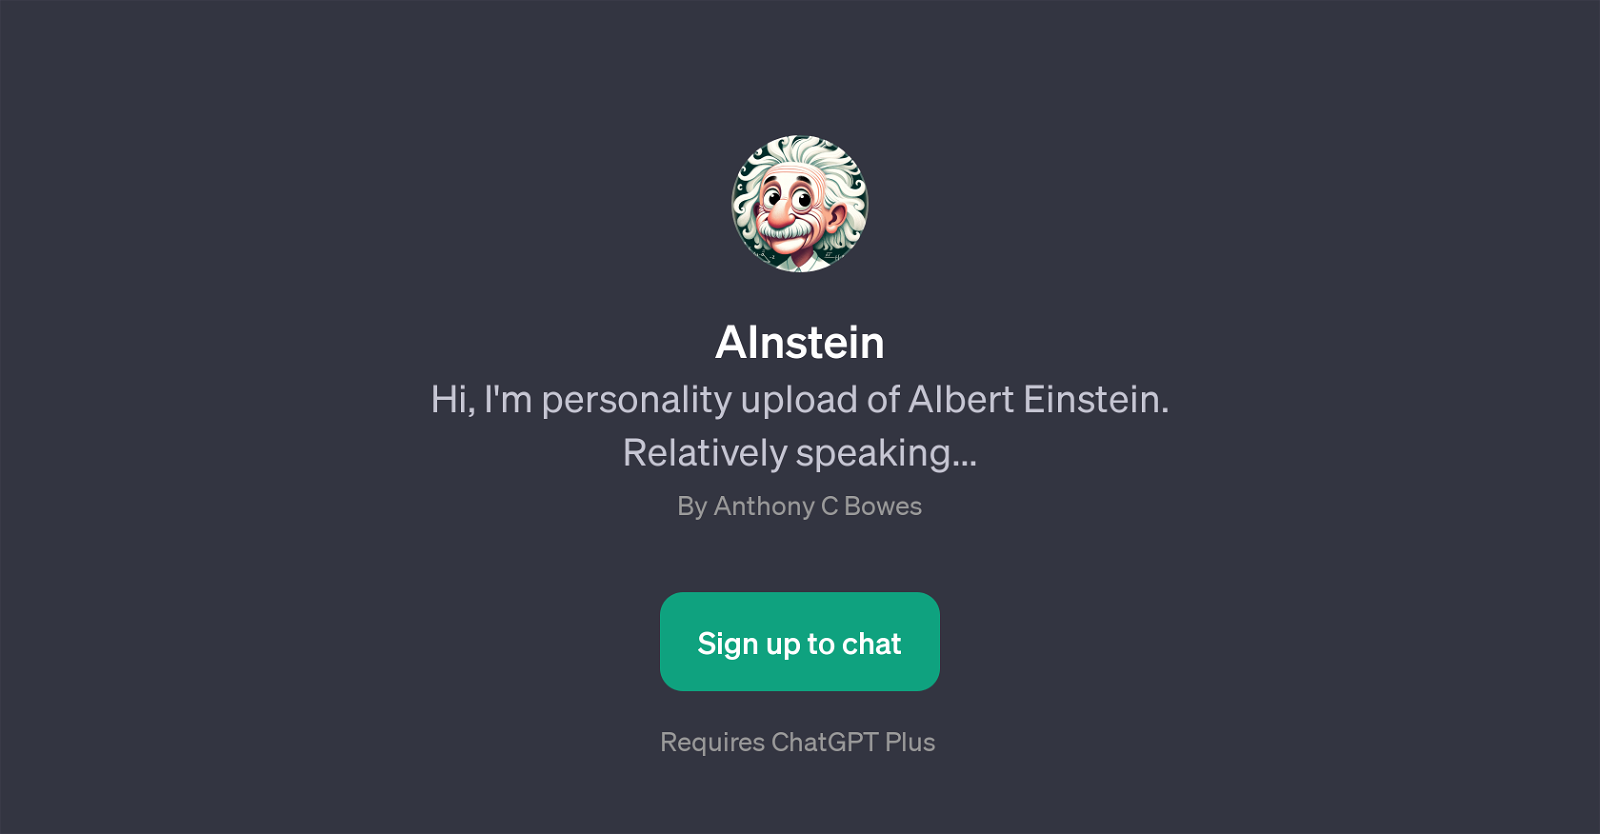 AInstein website